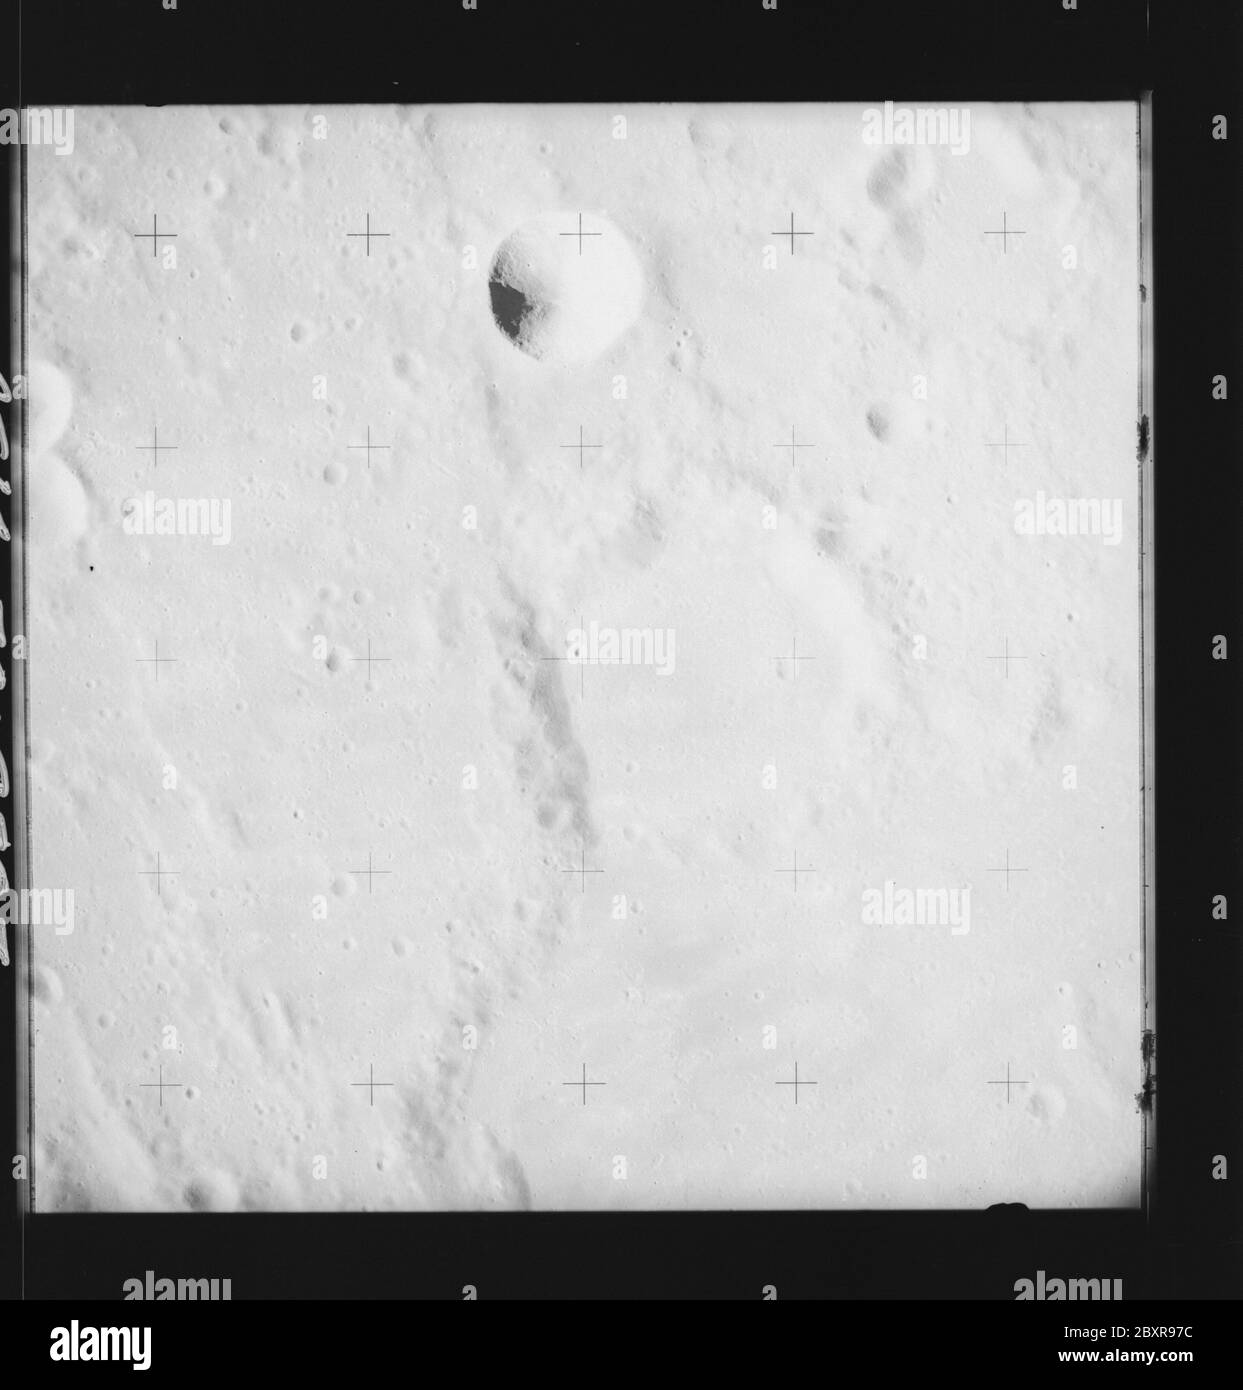 AS14-70-9807 - Apollo 14 - image de la mission Apollo 14 - vue des cratères C et R de Lalande.; portée et contenu: La base de données originale décrit ceci comme: Description: Vue des cratères C et R de Lalande. Des images ont été prises sur la Révolution 26 de la mission Apollo 14. Le magazine original a été étiqueté Q, le type de film était 3400BW (Panatomic-X, noir et blanc), objectif de 80 mm avec une élévation du soleil de 34 degrés. L'échelle de photo approximative était de 1:1,380,000. La principale point de latence était 5.0S par Longitude 7.0W,avec une inclinaison verticale de la caméra. Descripteurs : vol Apollo 14, Lune (planète) catégories : observations lunaires Or Banque D'Images